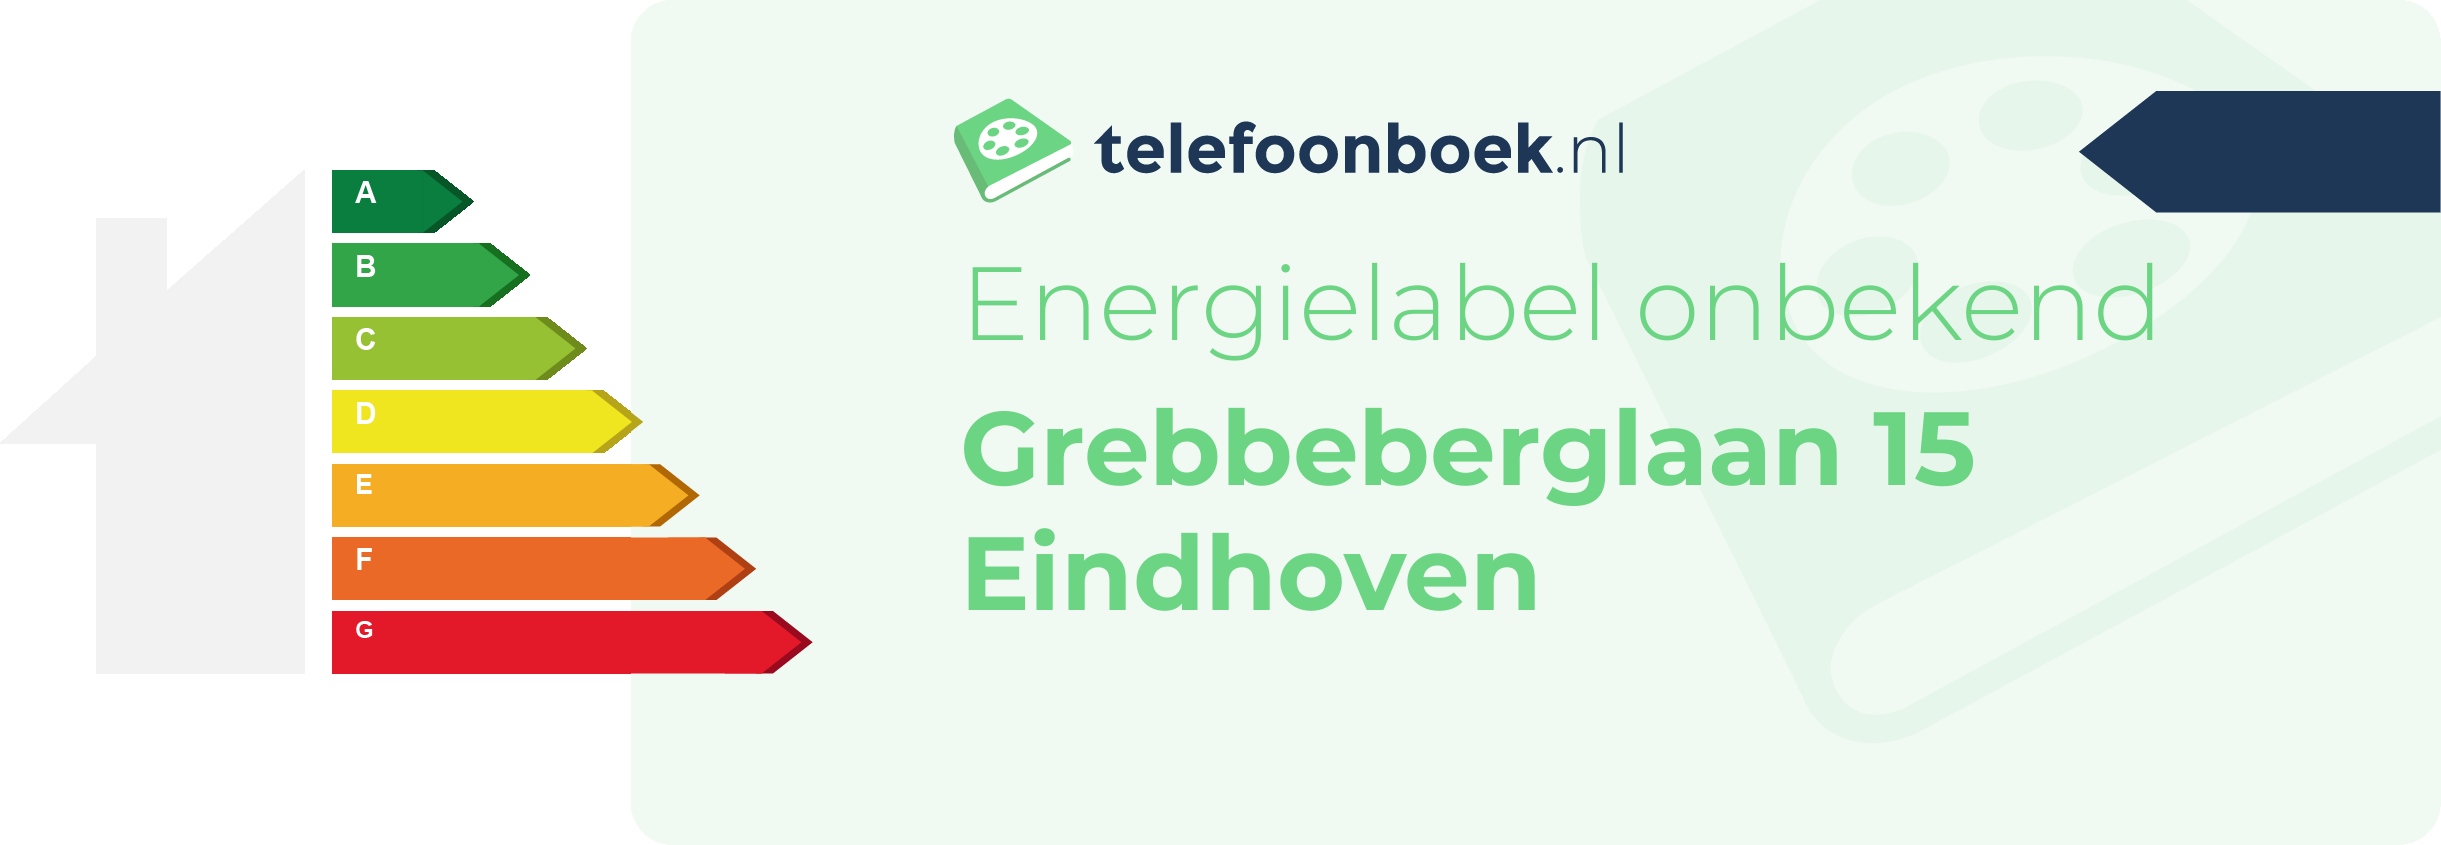 Energielabel Grebbeberglaan 15 Eindhoven